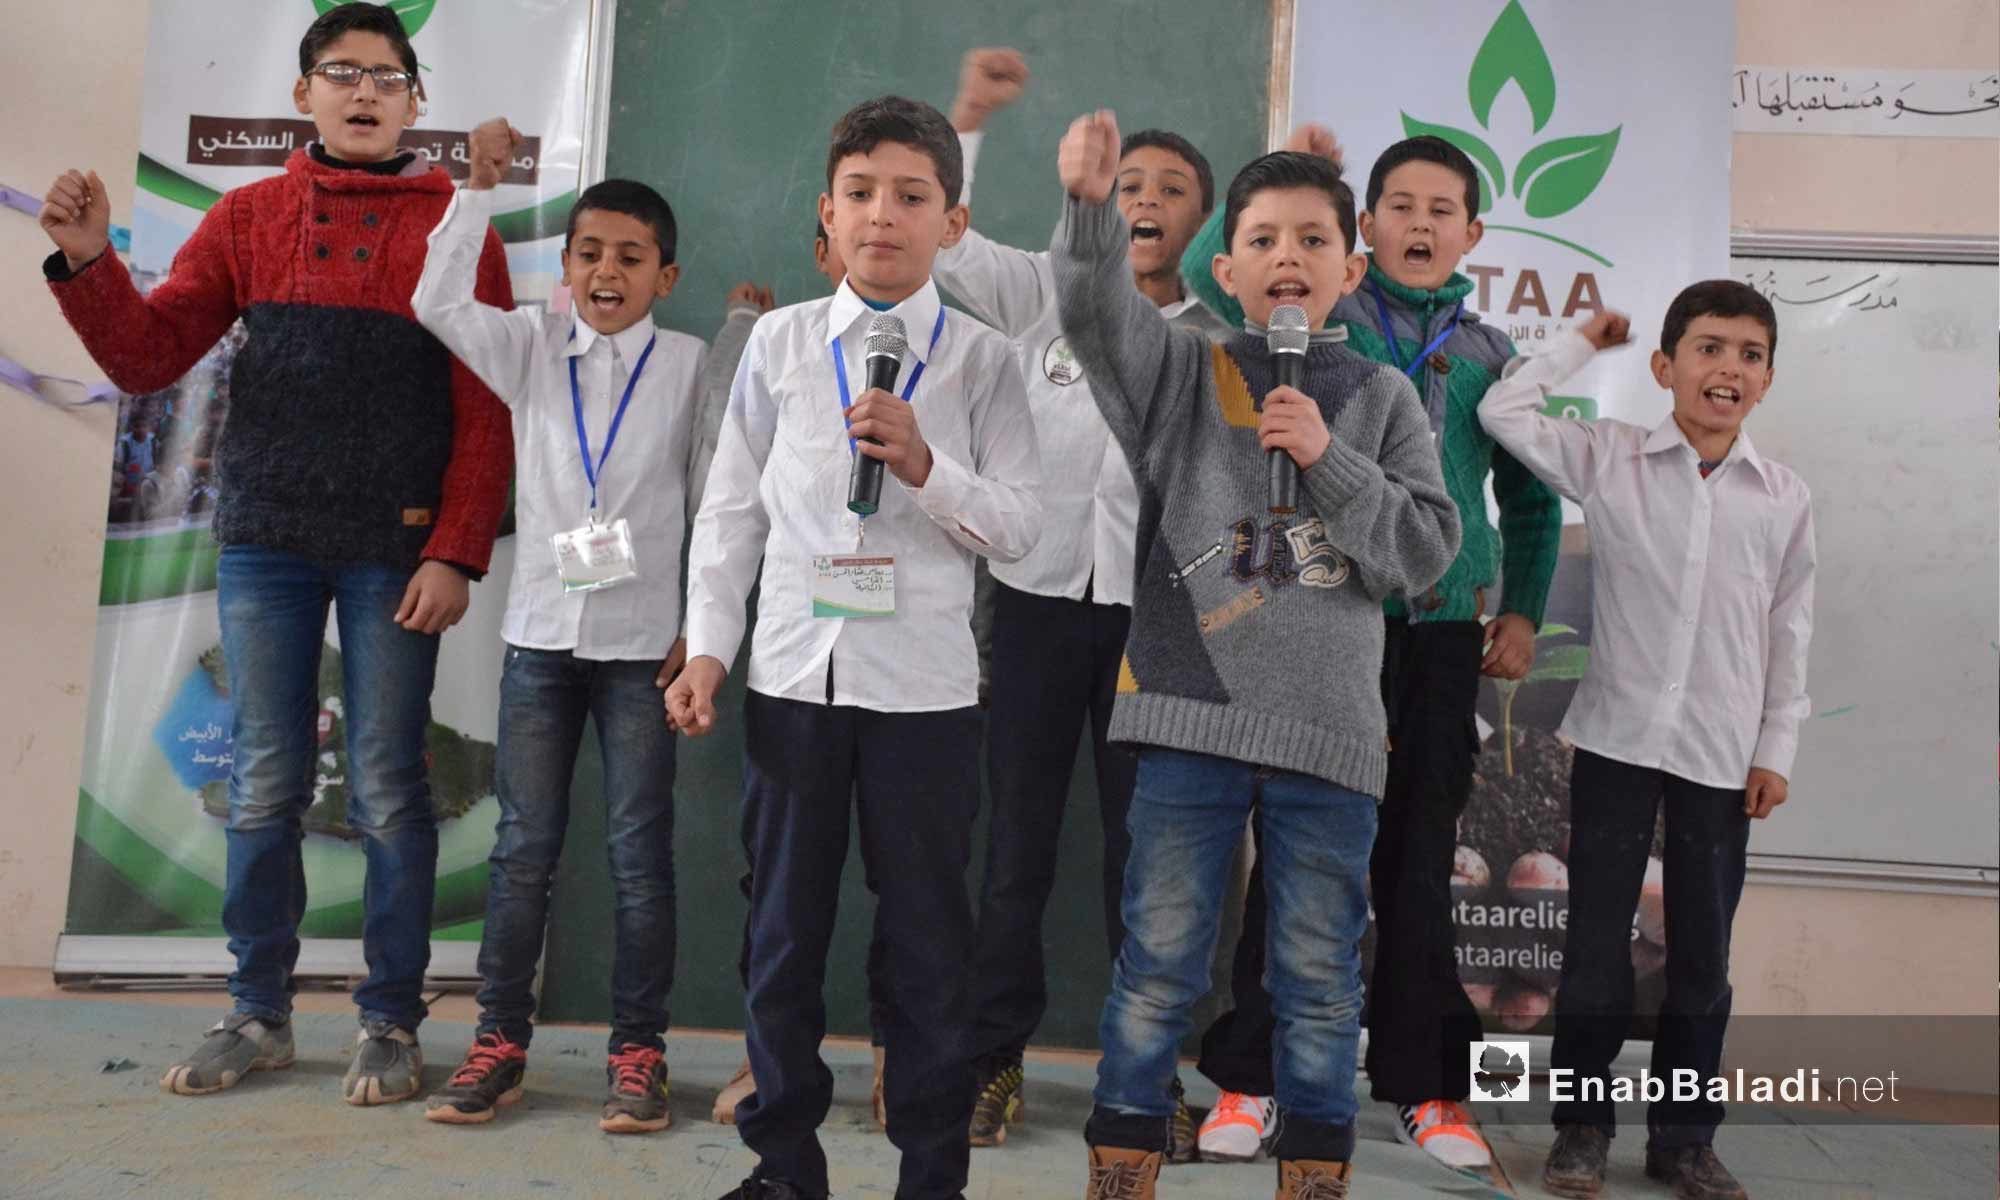 أطفال يؤدون عرضًا خلال حفل تكريم المتفوقين في تجمع أطمة الأول بريف إدلب - 20 شباط 2018 (عنب بلدي)